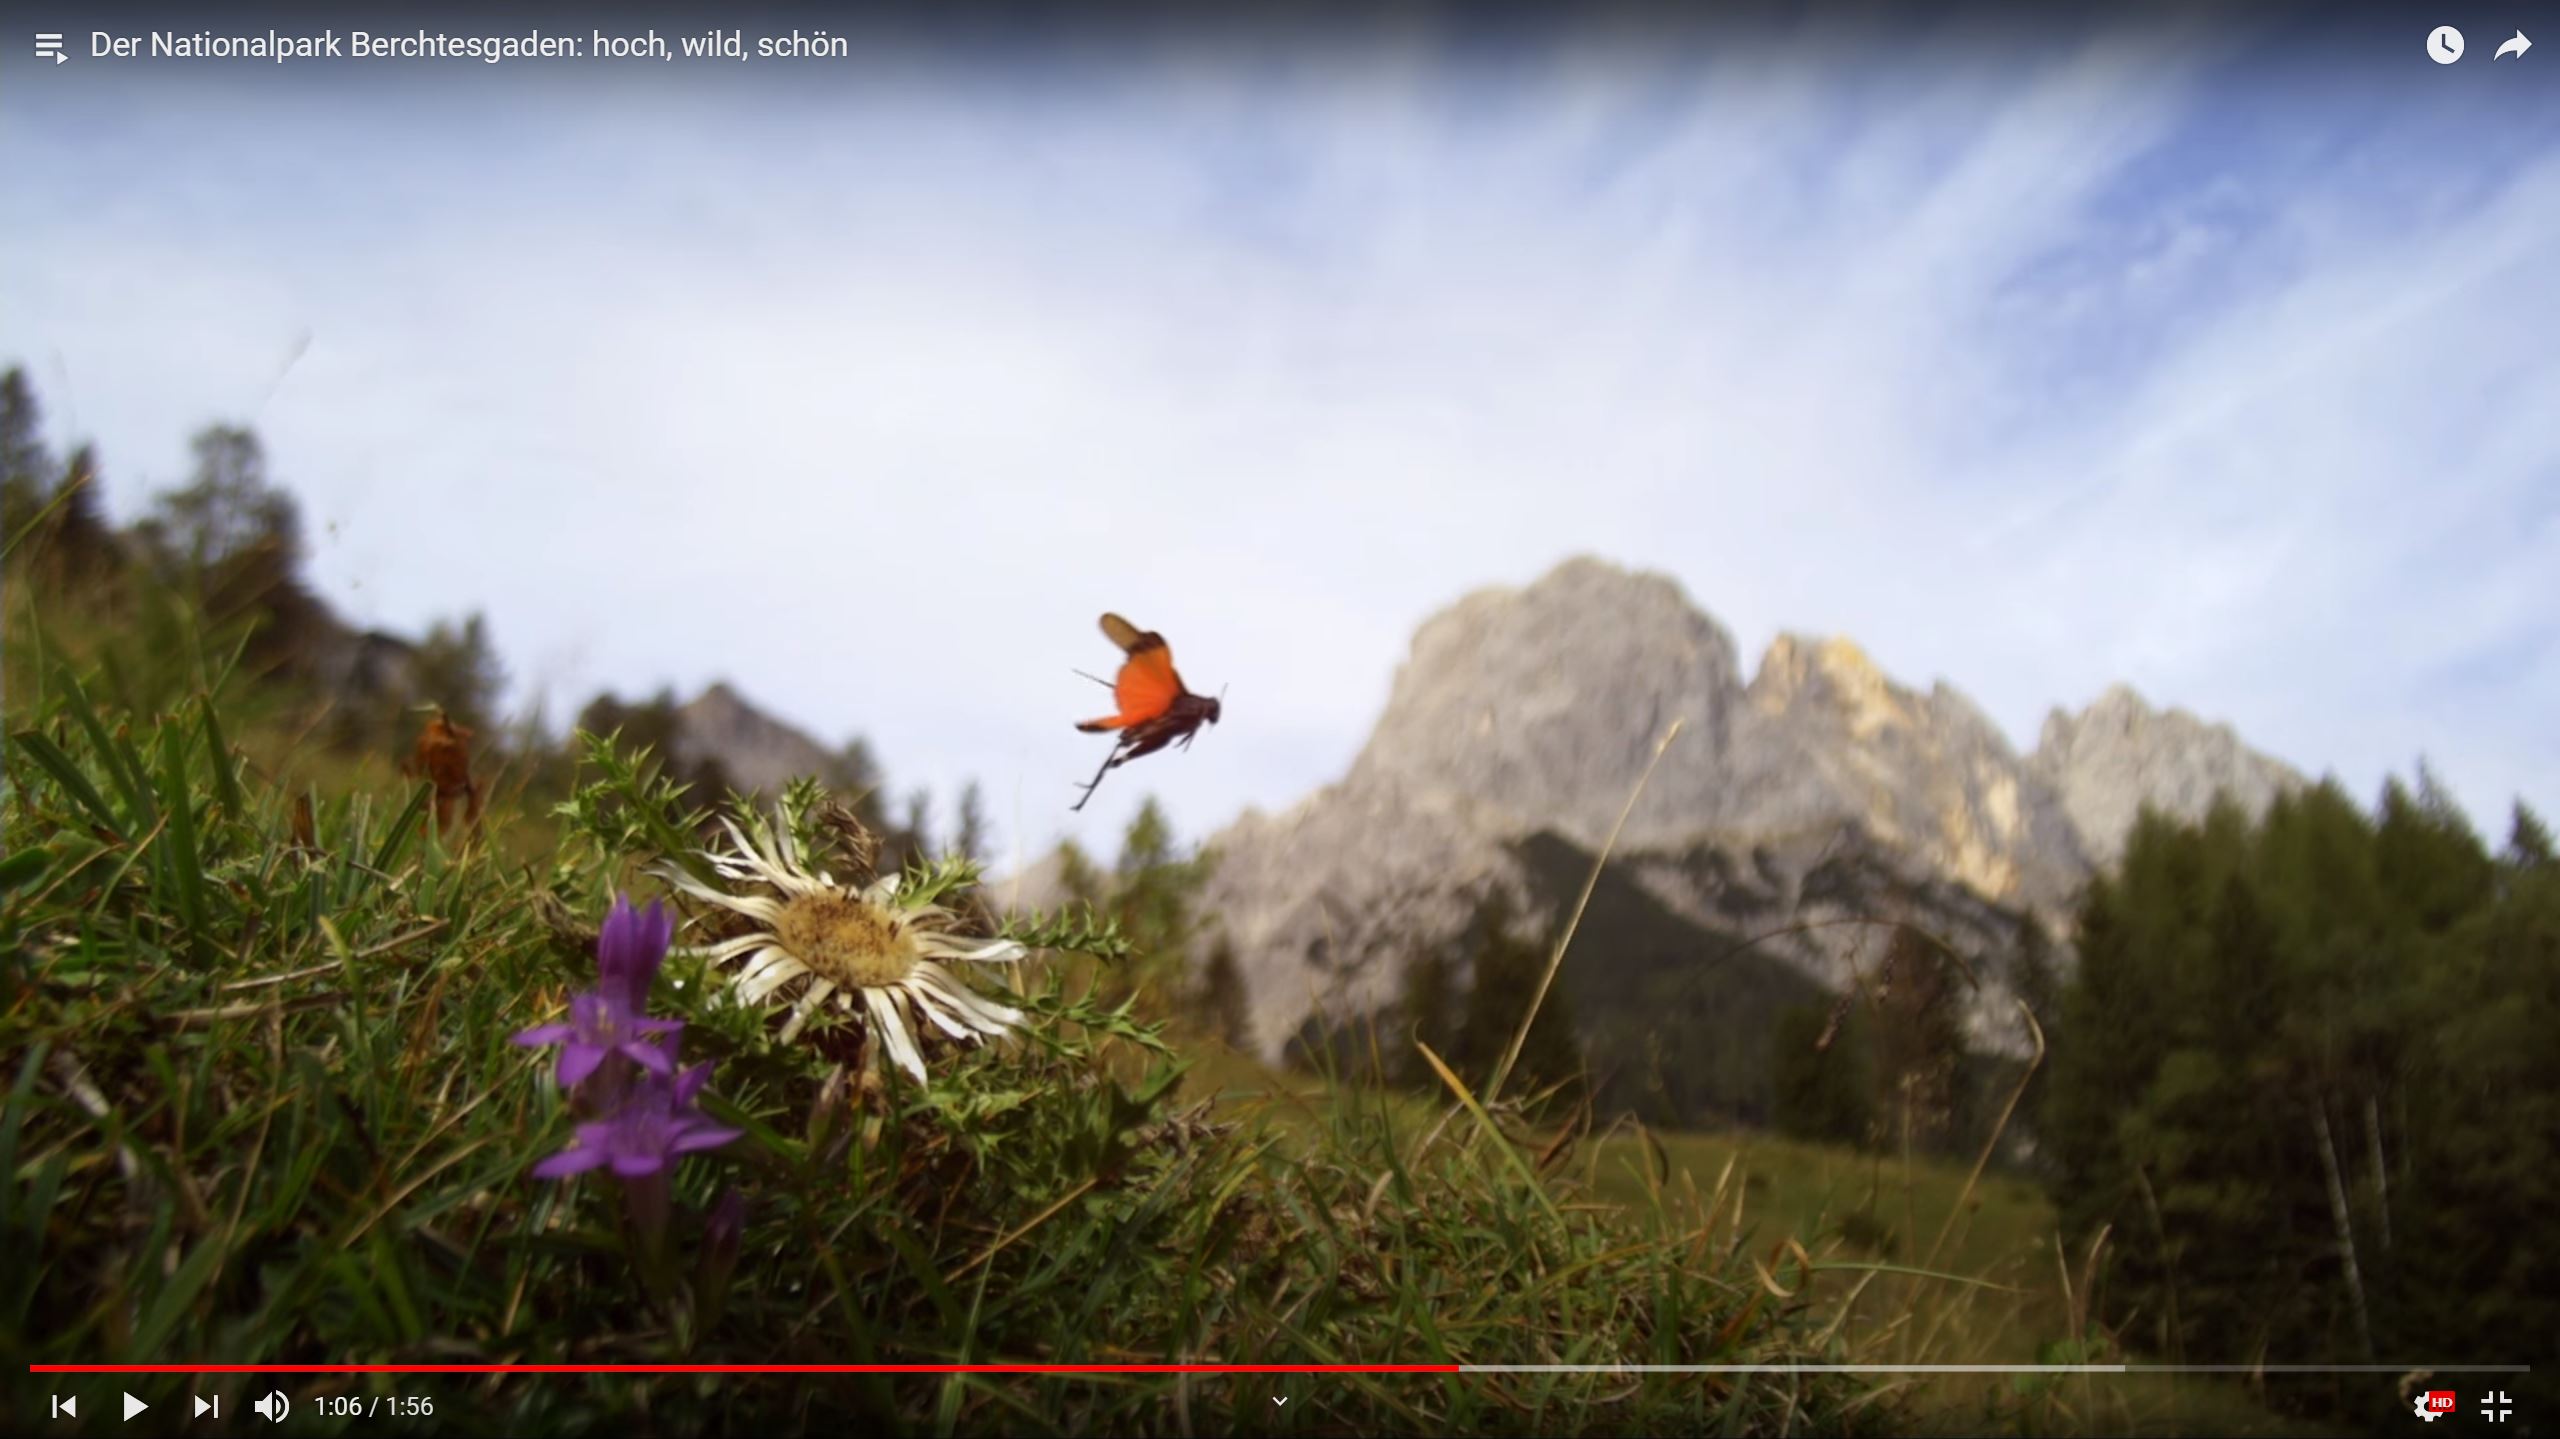 Der Nationalpark Berchtesgaden: hoch, wild, schön